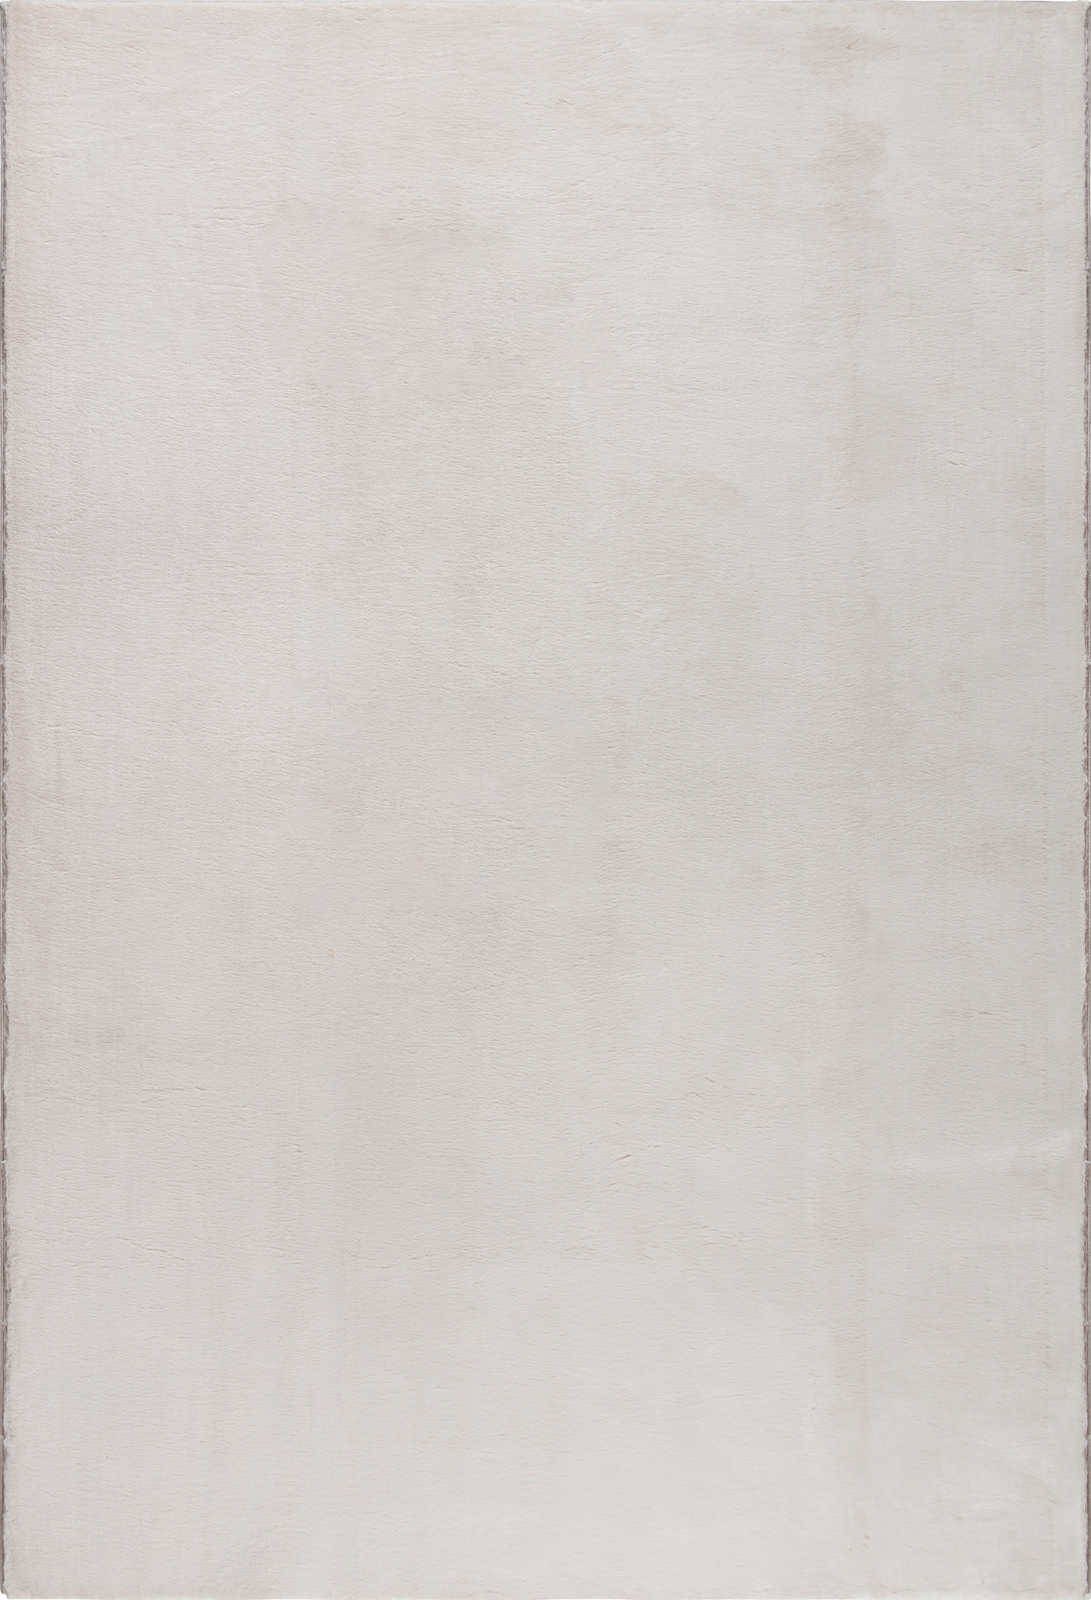             Kuschelweicher Hochflor Teppich in leichtem Beige – 110 x 60 cm
        